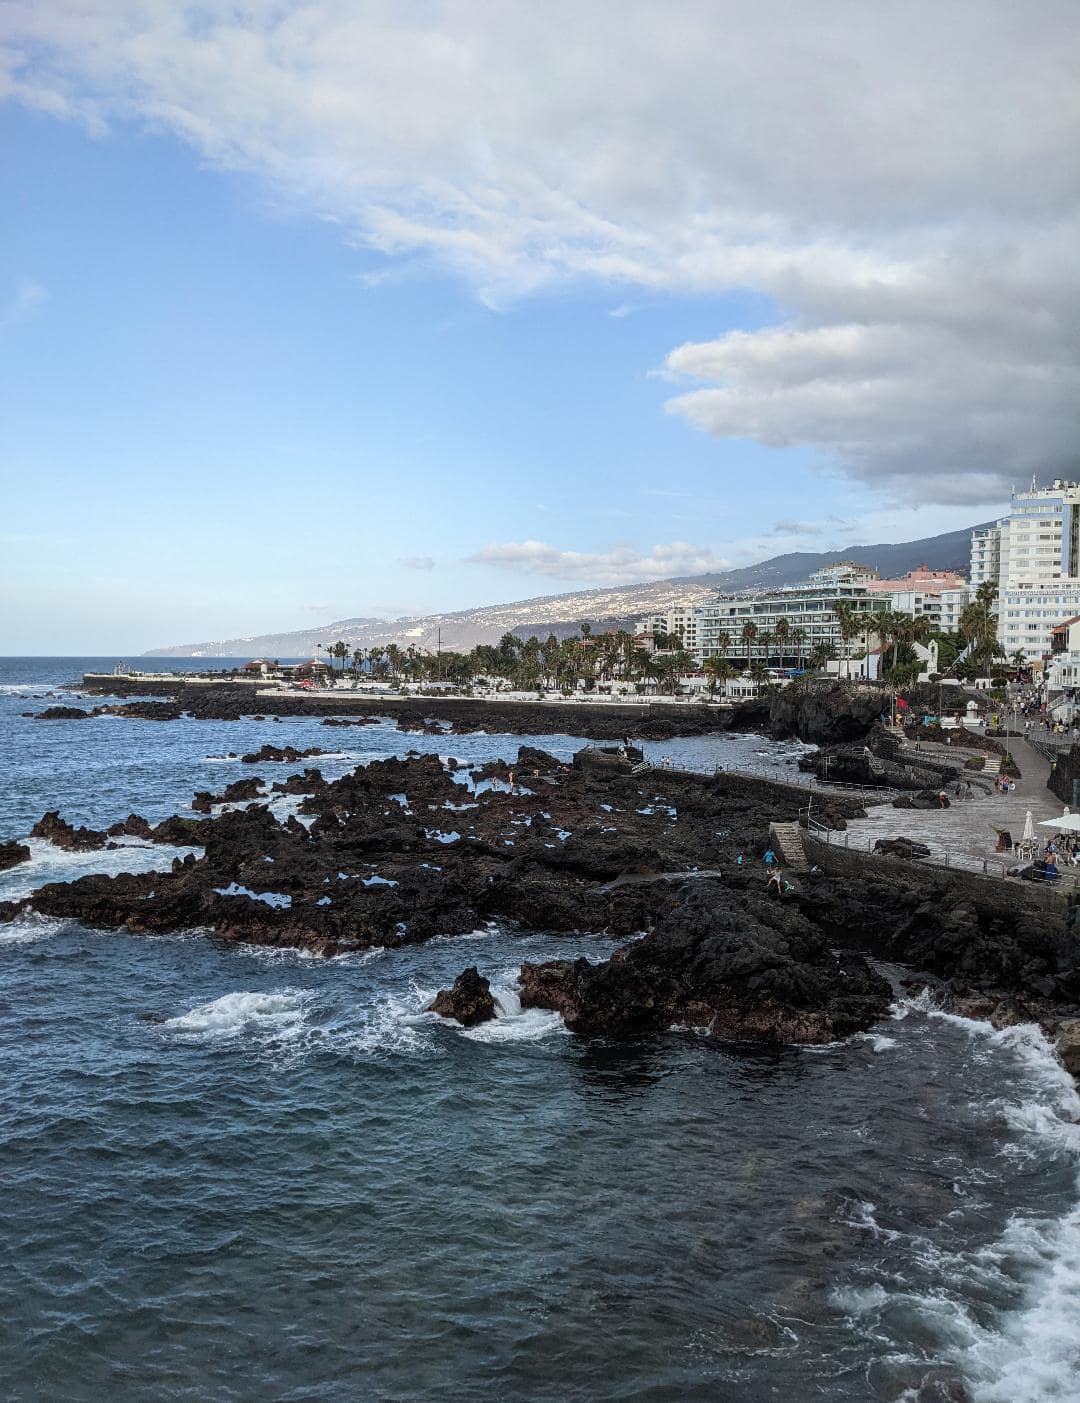 Výhľad na mesto Puerto de la Cruz, ktoré obklopuje Atlantický oceán.